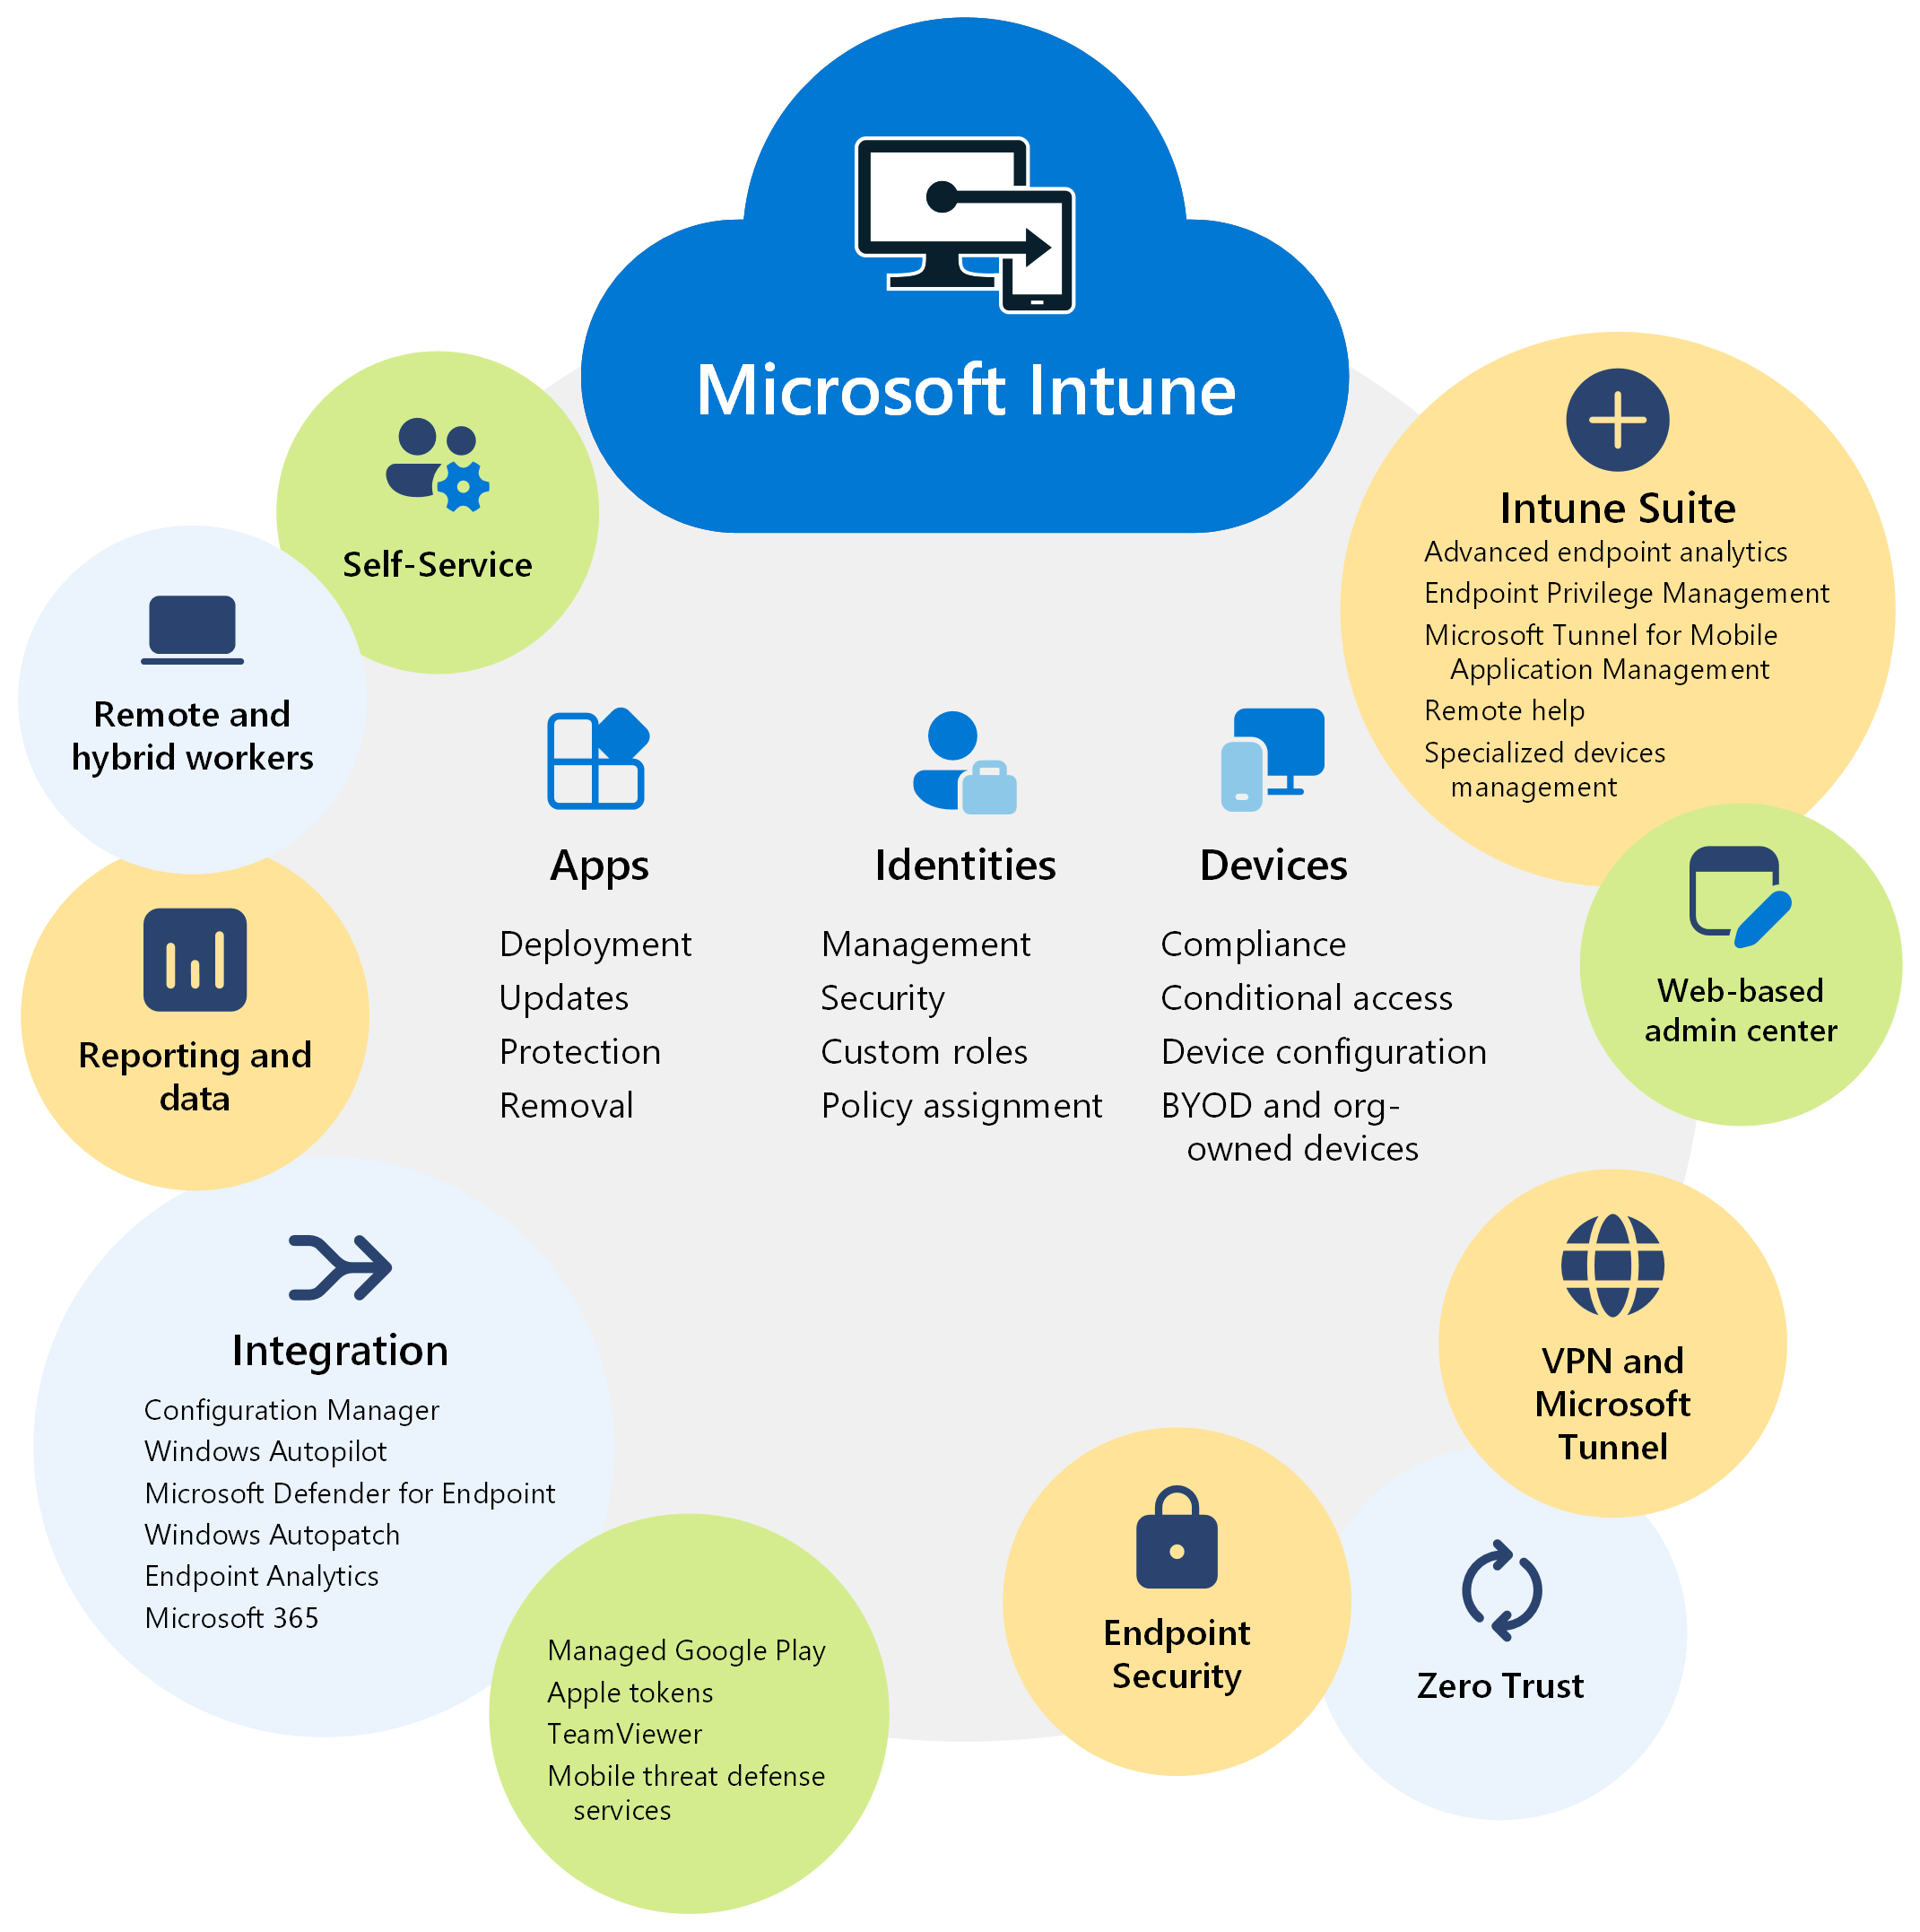 显示 Microsoft Intune 的功能和优势的关系图。